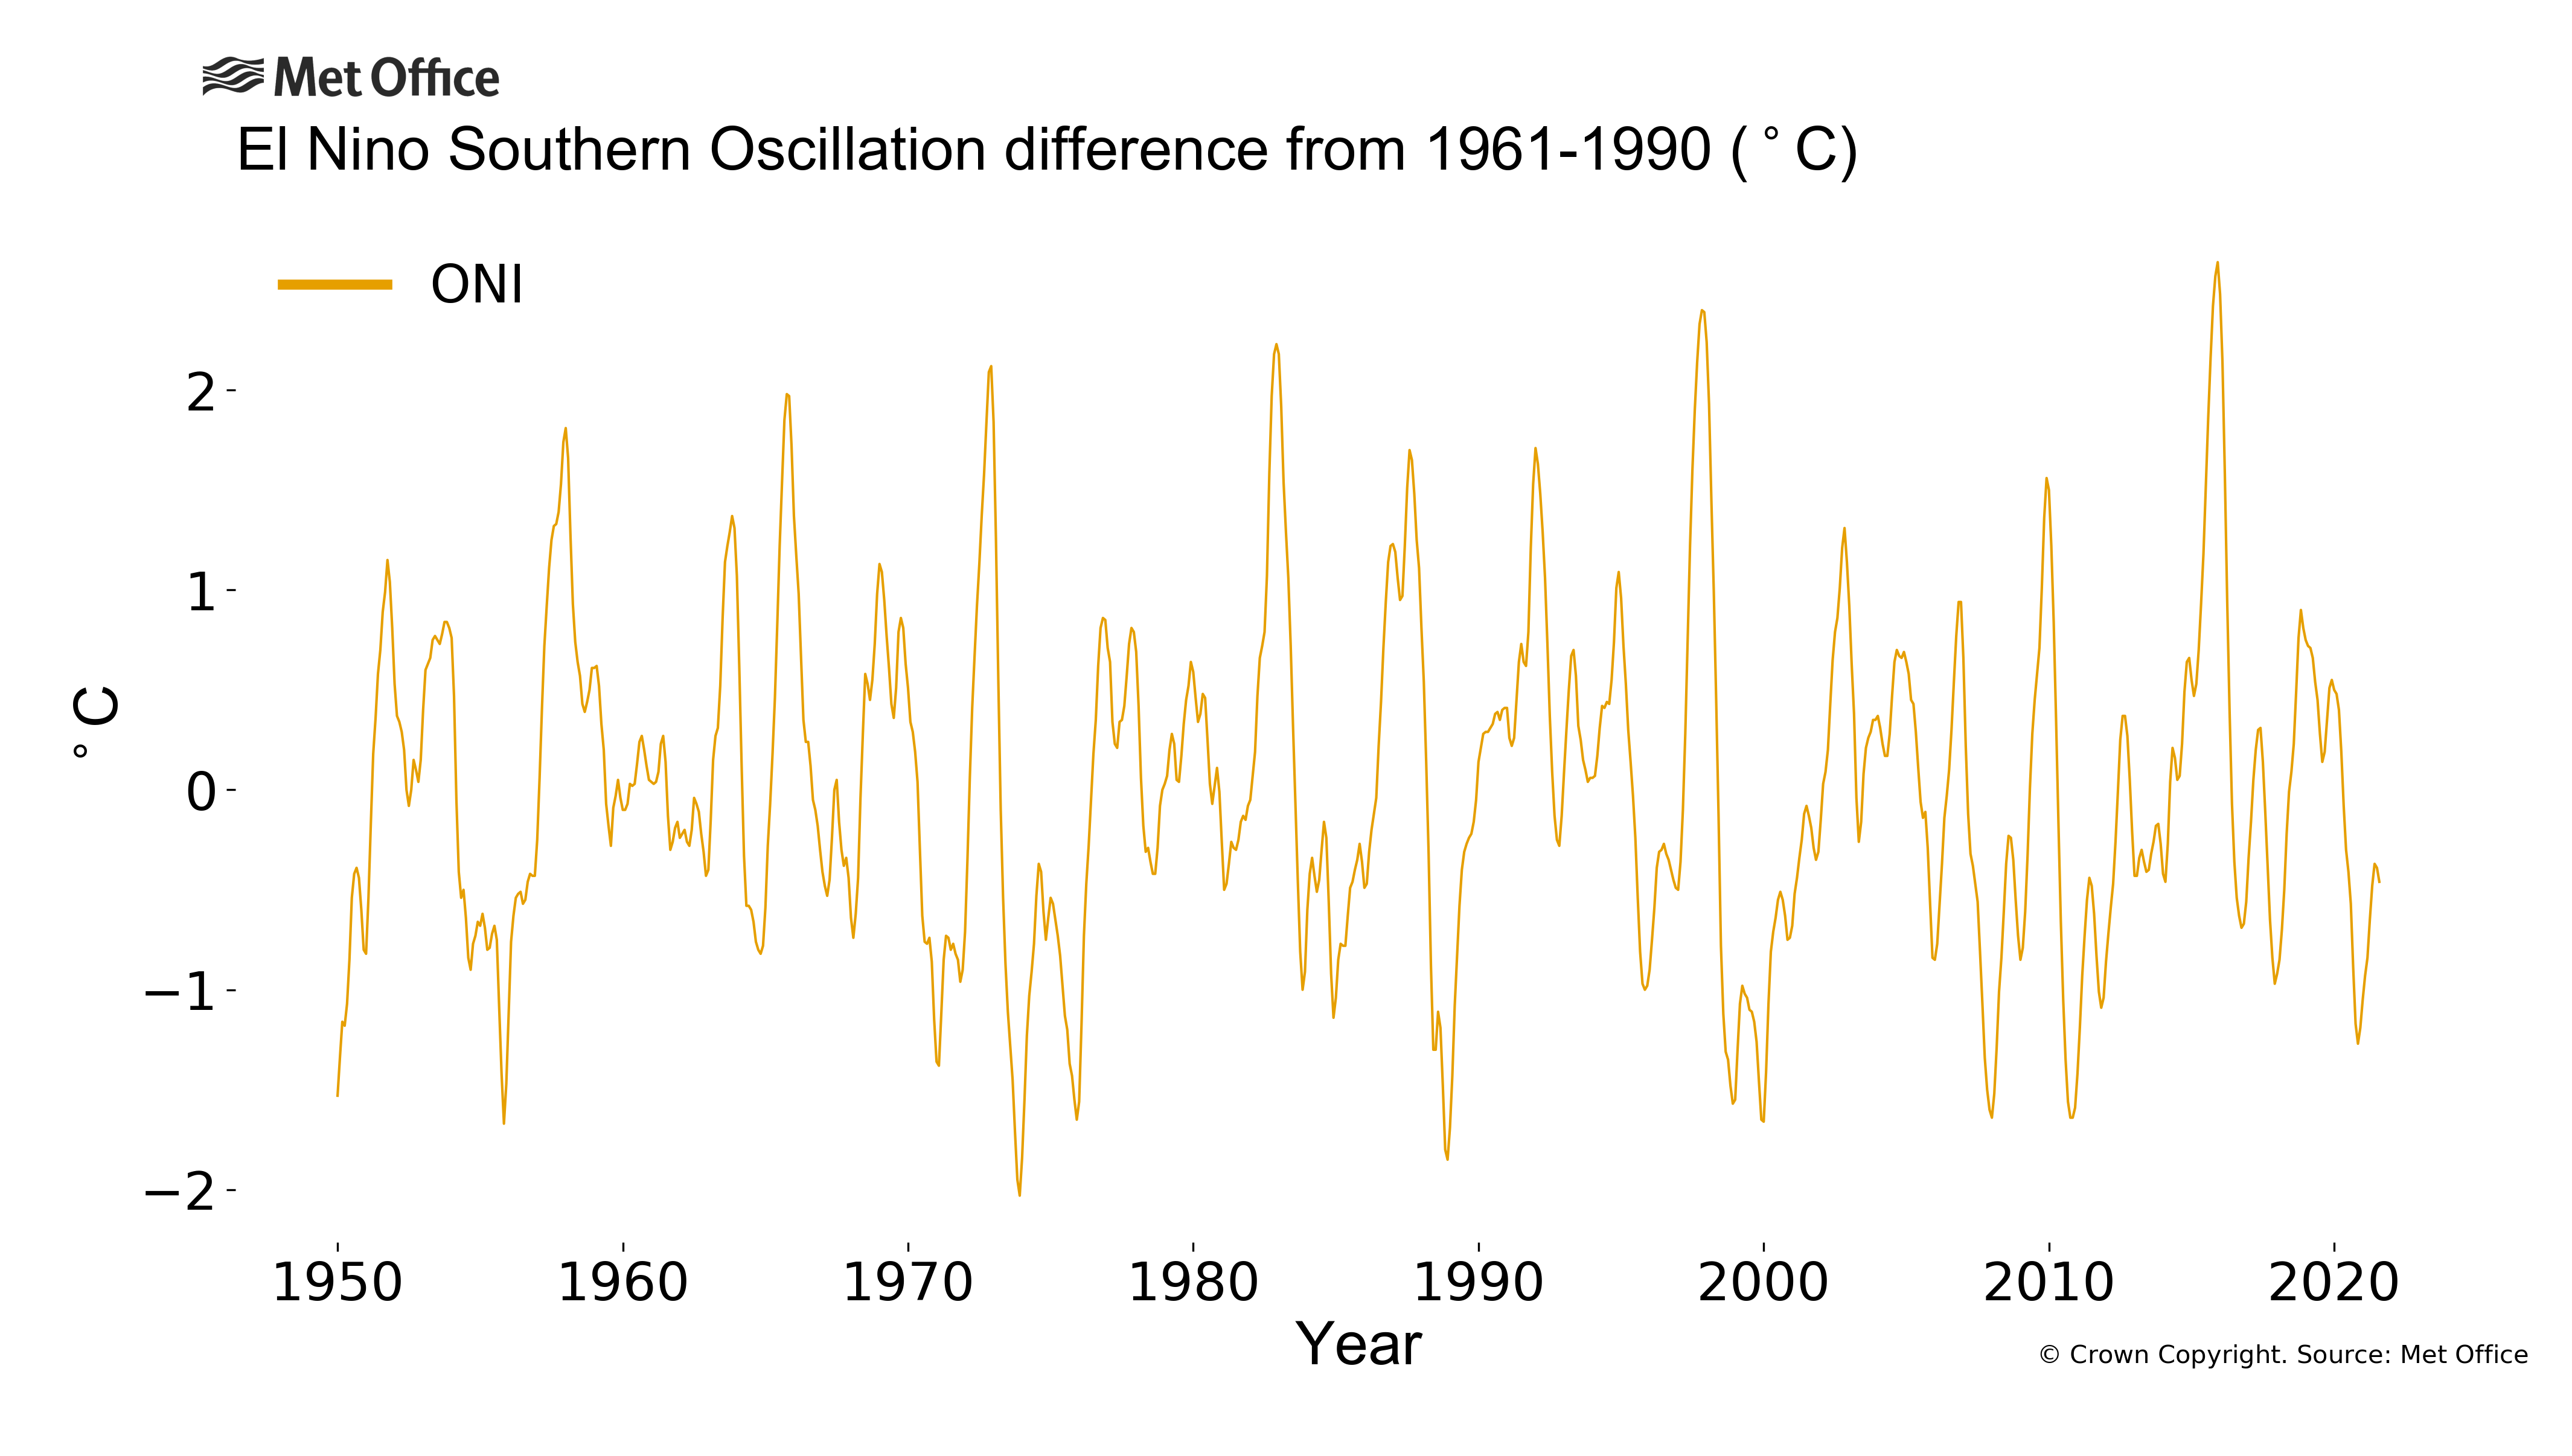 
El Niño Southern Oscillation
